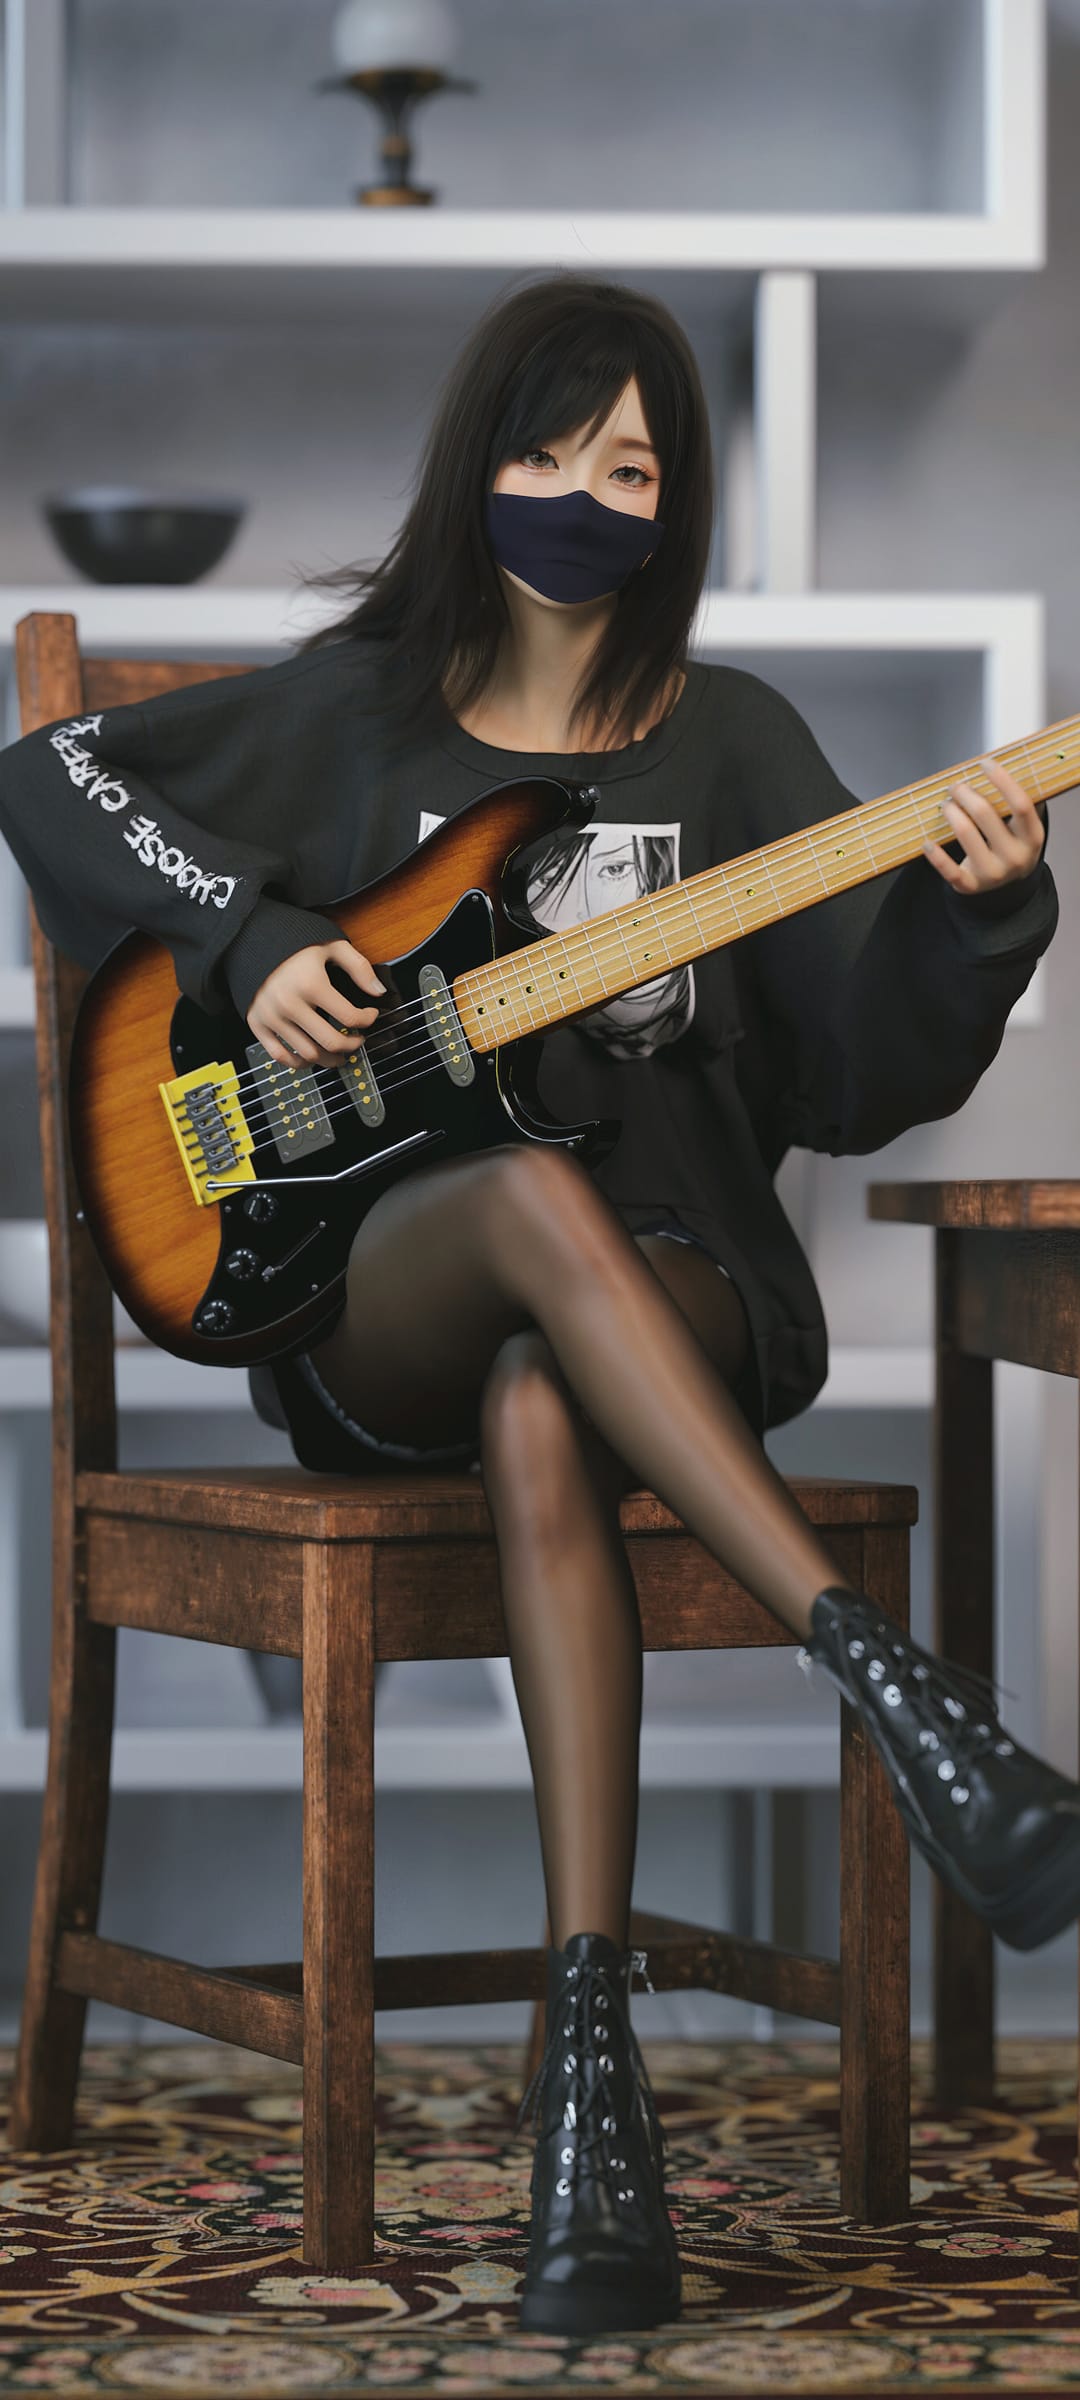 个性3D美女黑色丝袜轻弹吉他高清手机壁纸